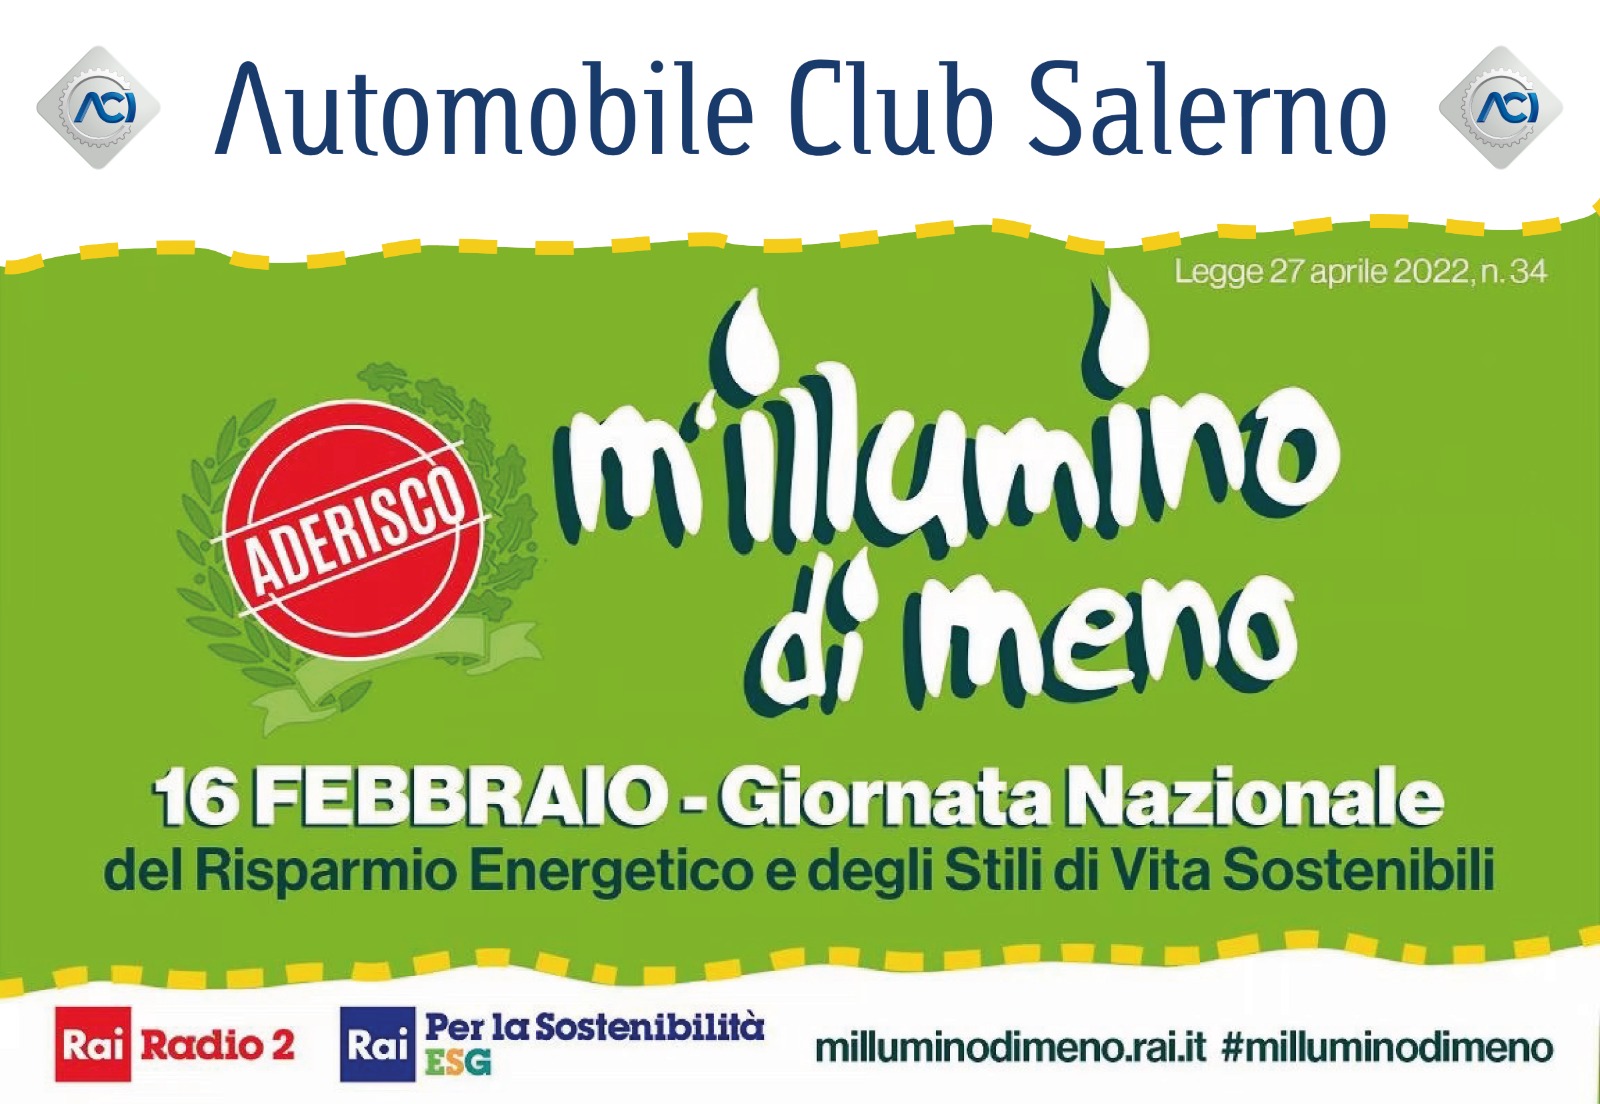 Salerno: Aci, adesione campagna “M’illumino di meno”